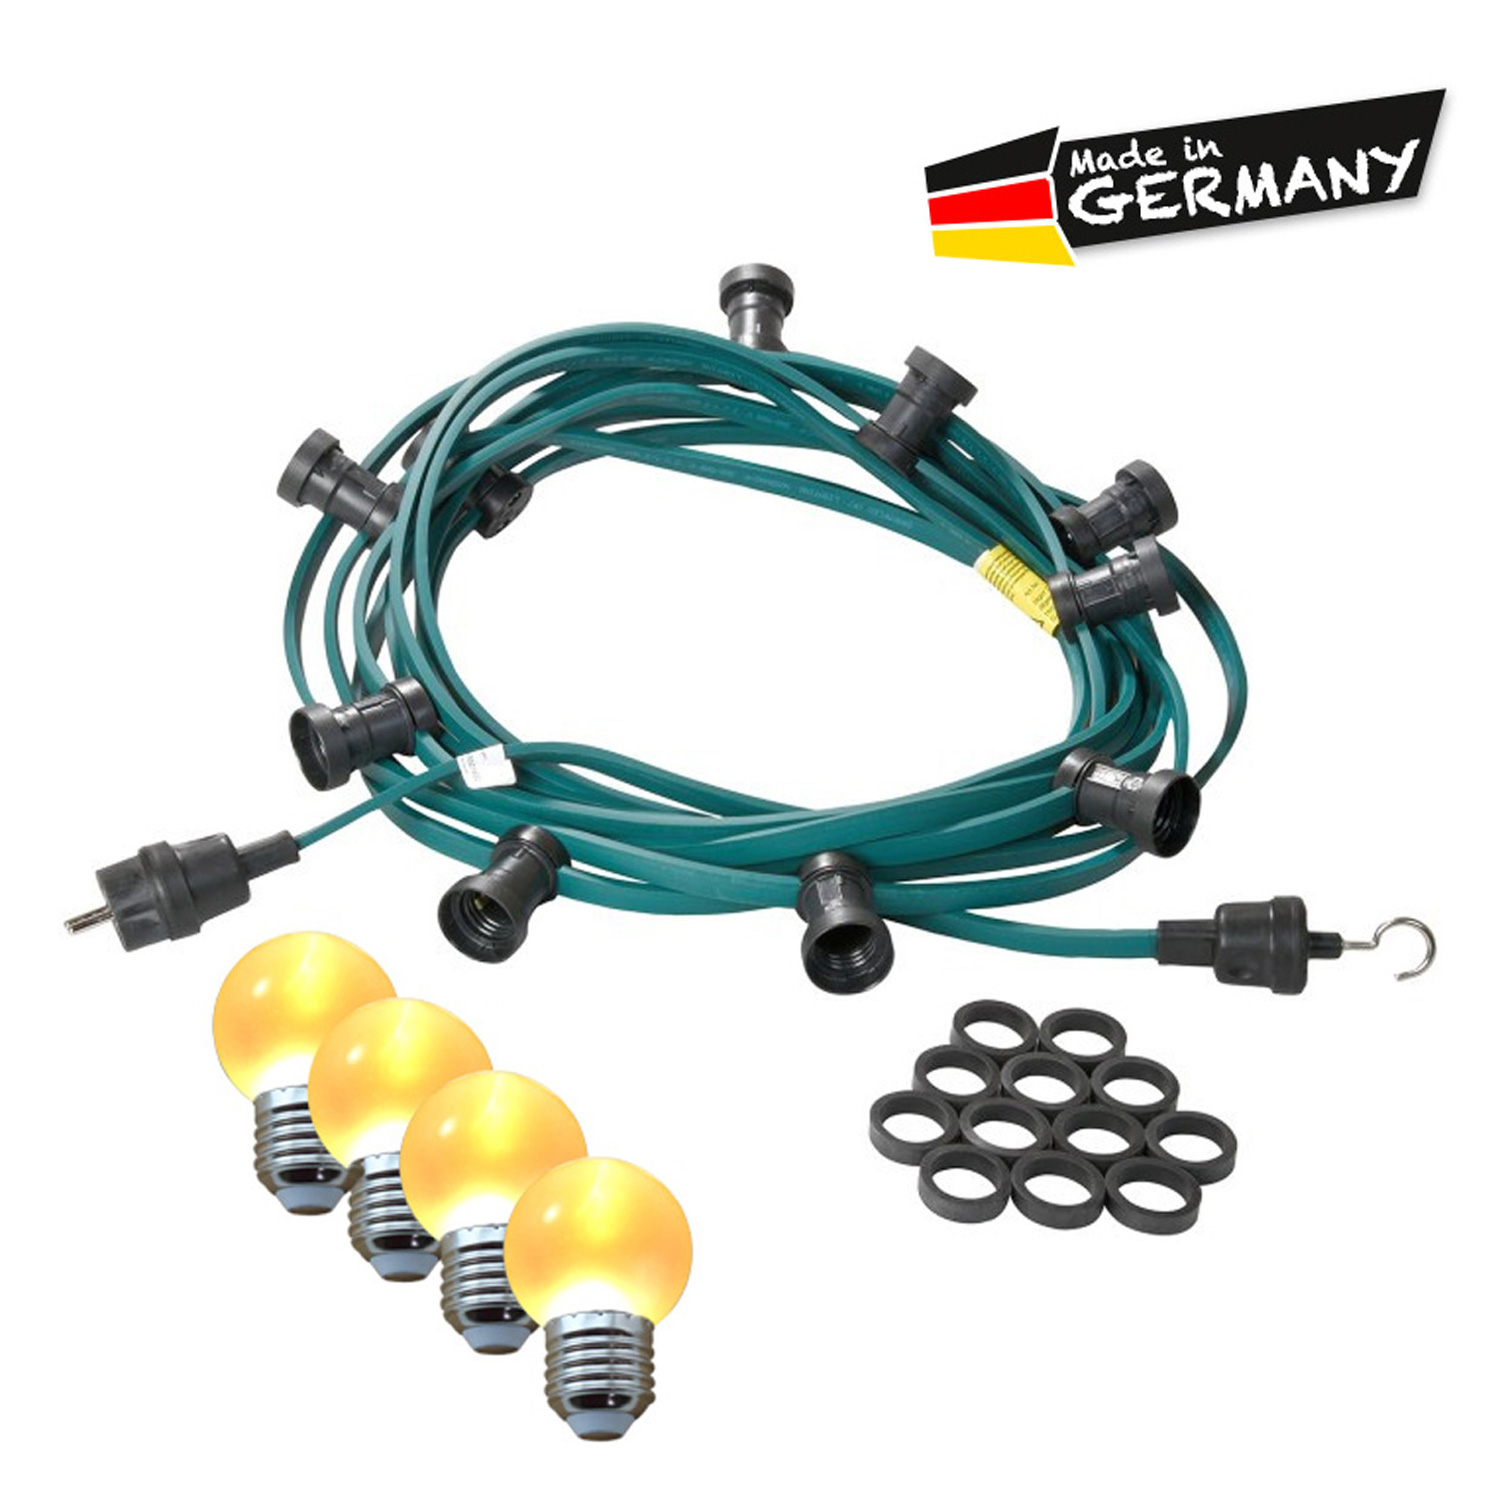 Illu-/Partylichterkette 40m | Außenlichterkette | Made in Germany | 60 x ultra-warmweisse LED Kugeln